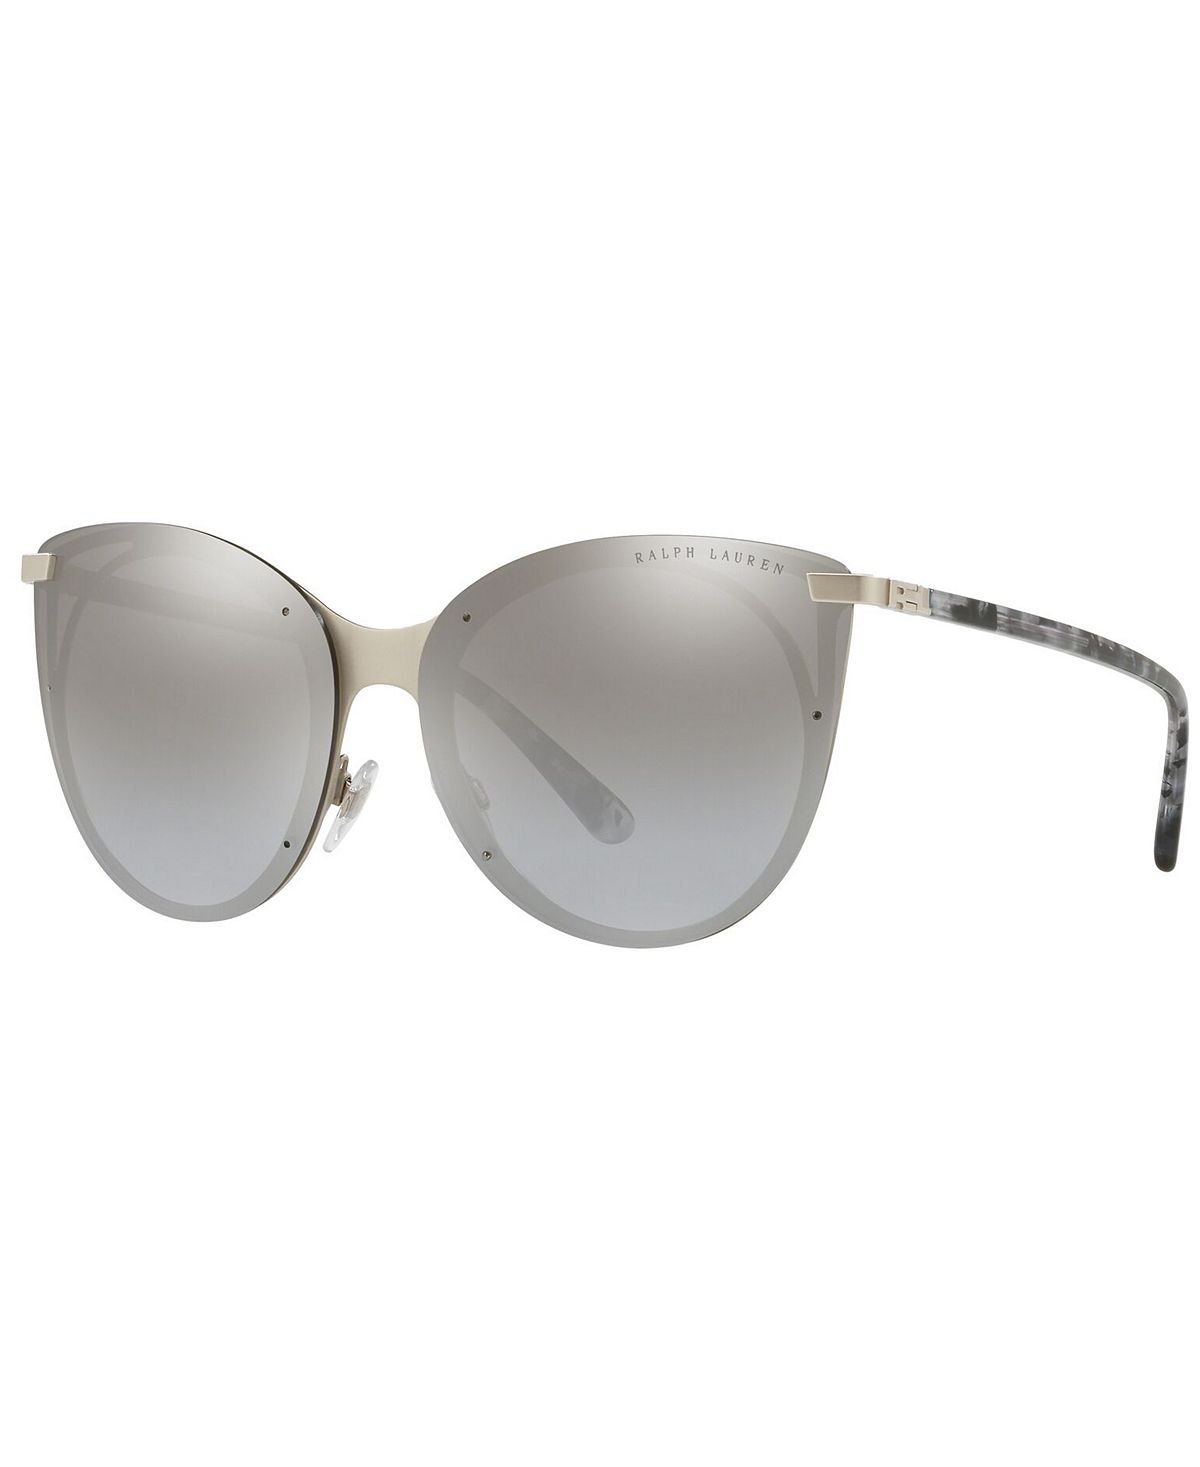 Женские солнцезащитные очки, RL7059 63 Ralph Lauren цена и фото